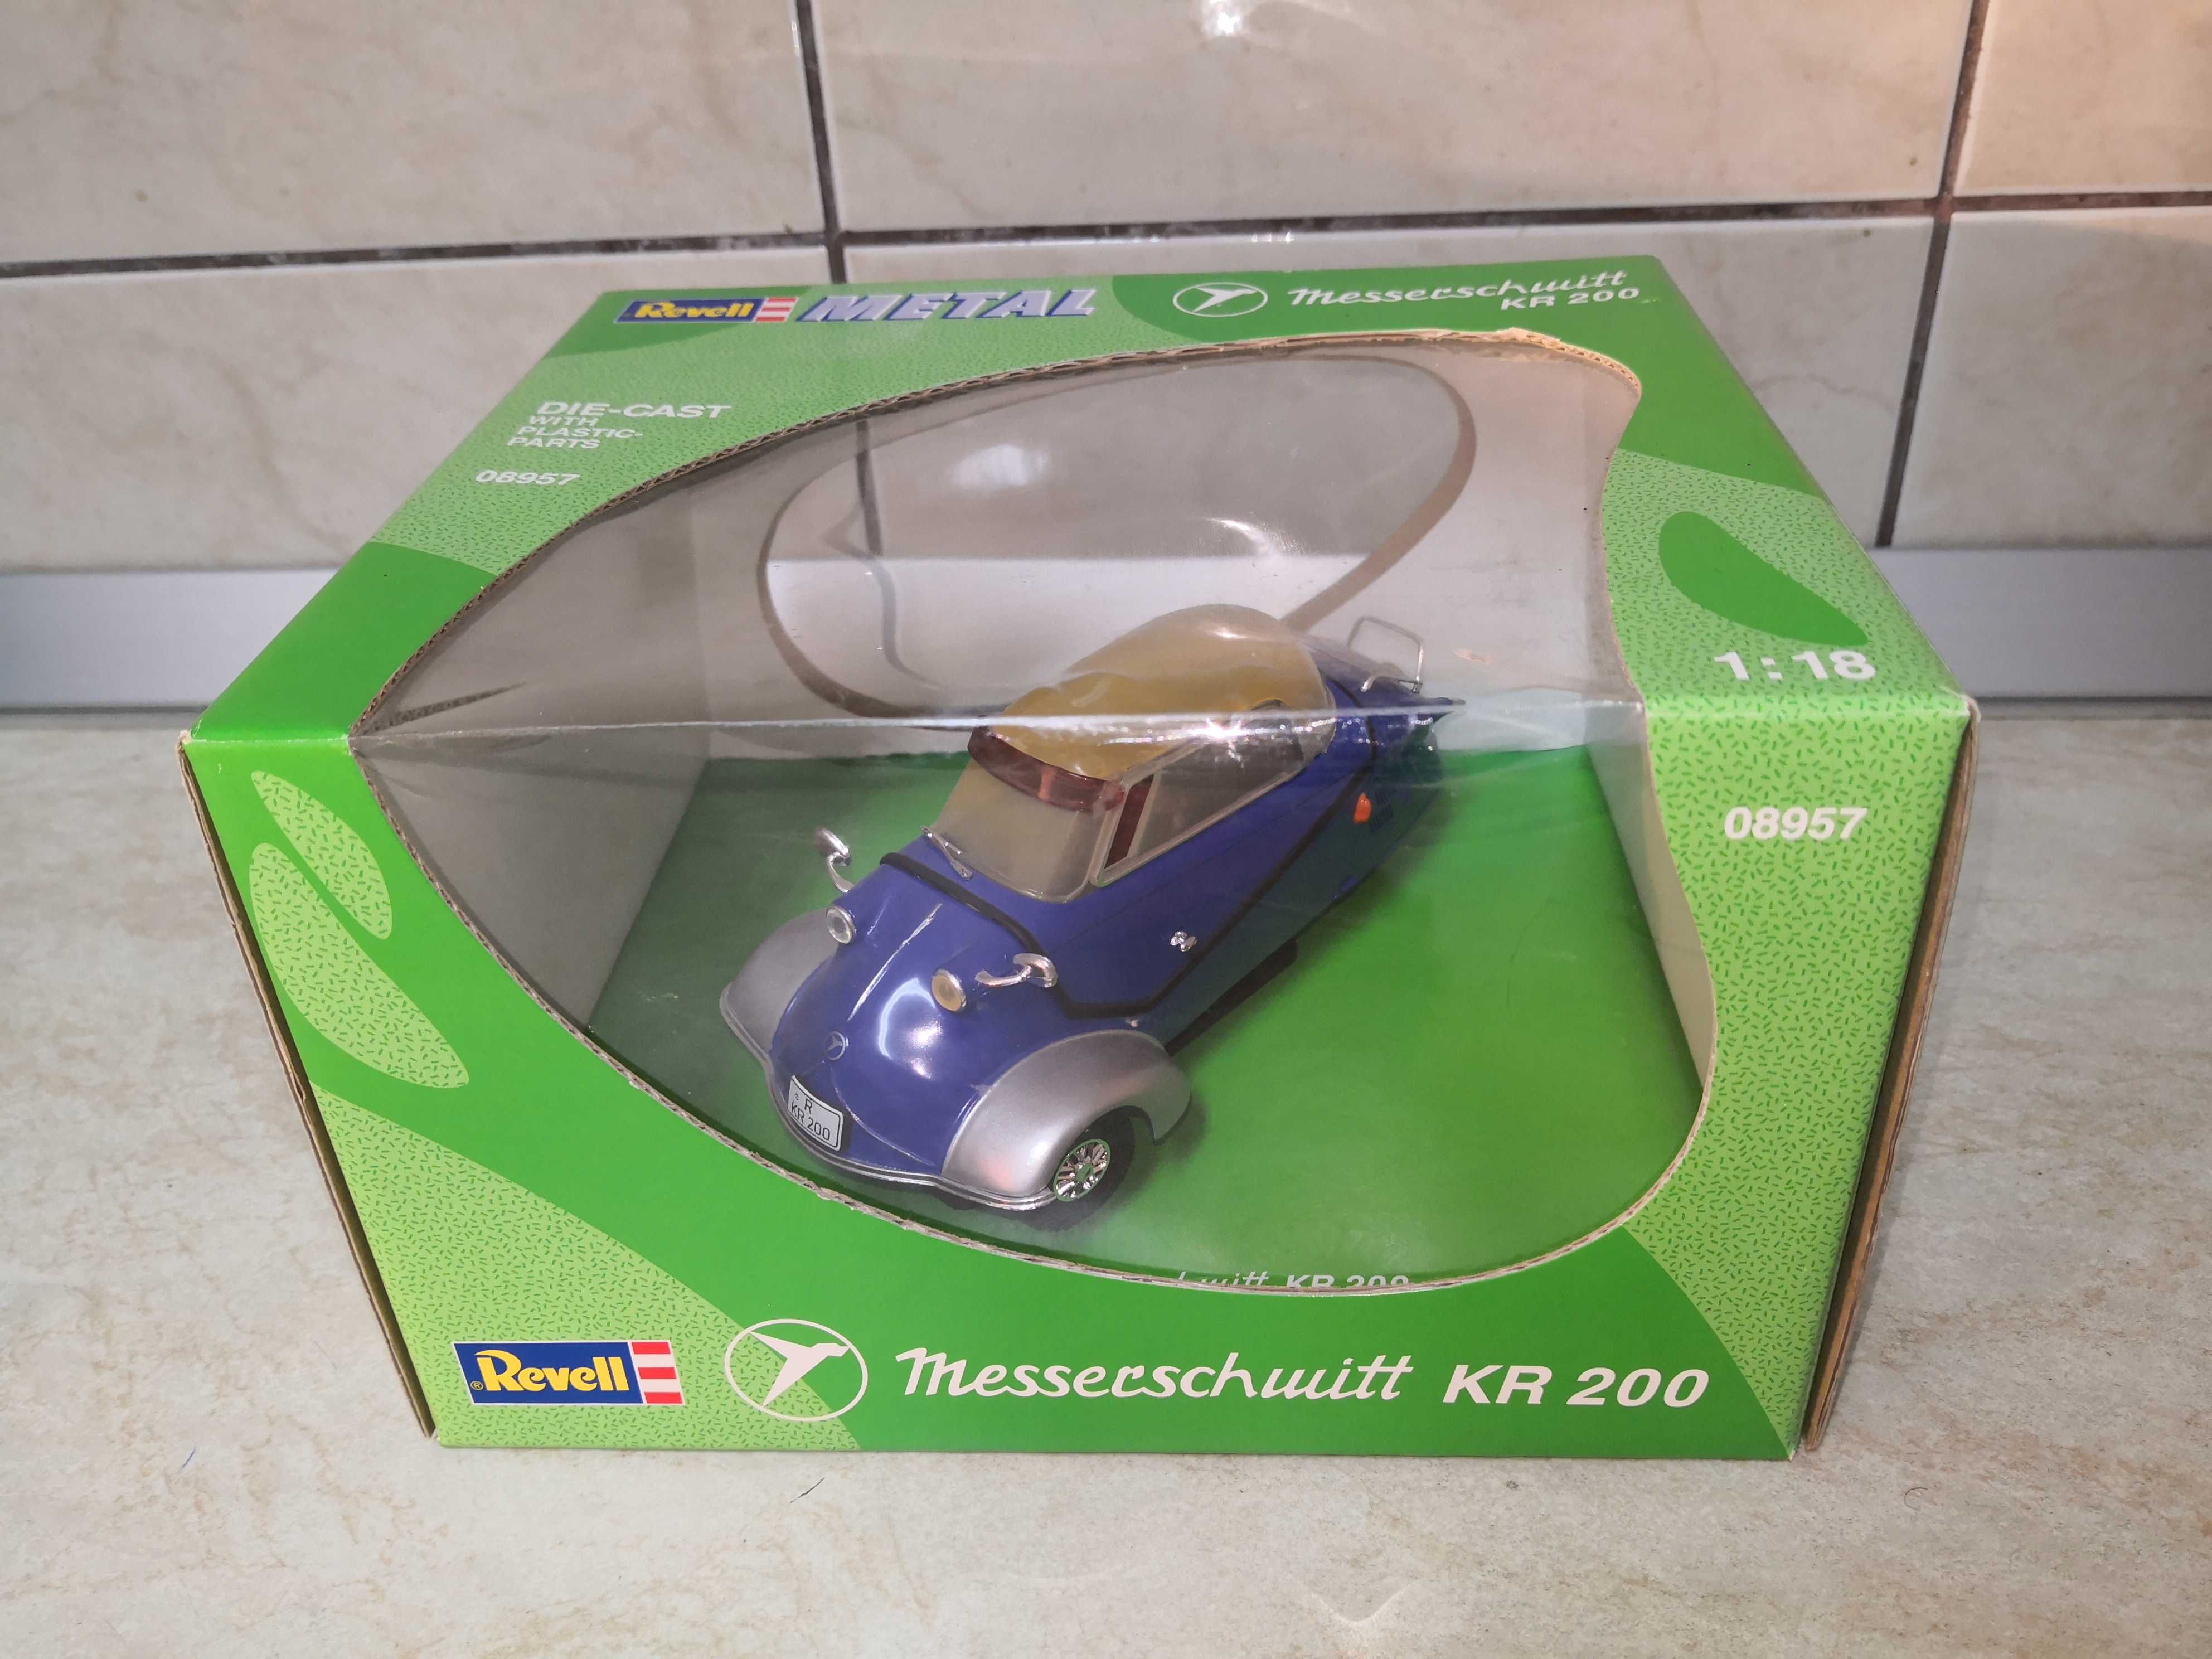 Macheta auto Messerschmitt KR200, scara 1:18, Revell